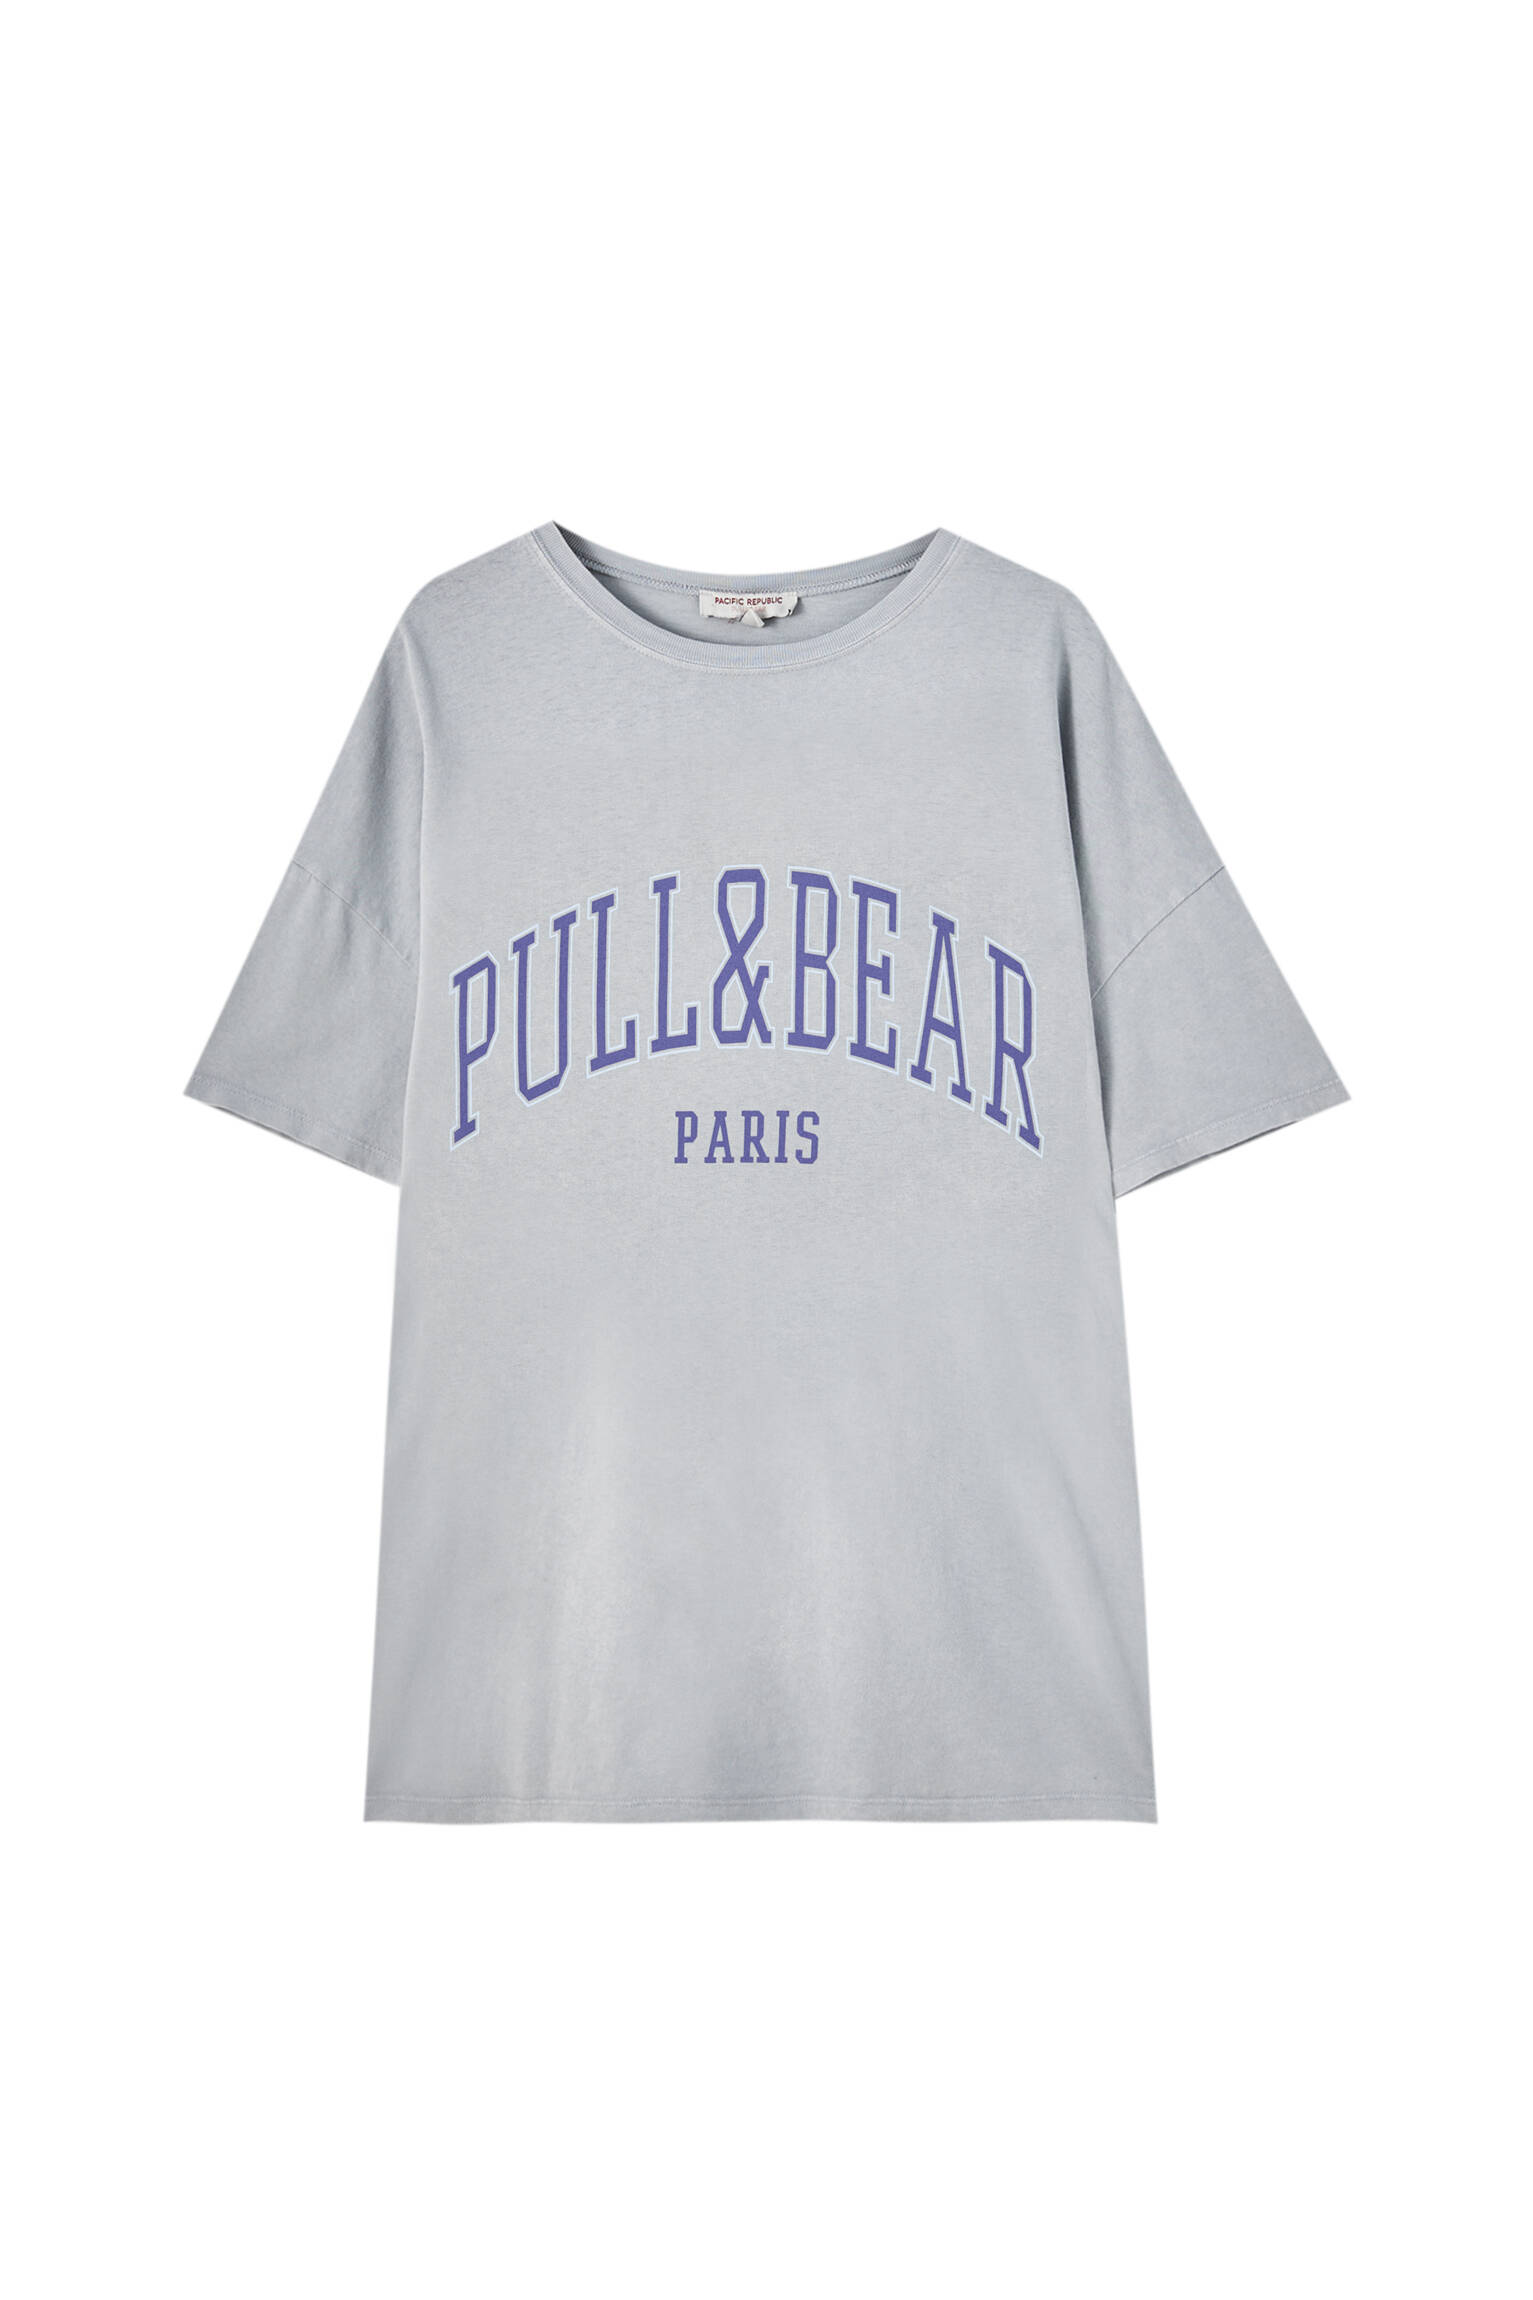 Pull&bear Femme T-shirt 100 % Coton à Col Rond Et Manches Courtes, Avec Logo Pull&bear Et Inscription Paris Contrastante Sur La Poitrine. Gris Ciment M